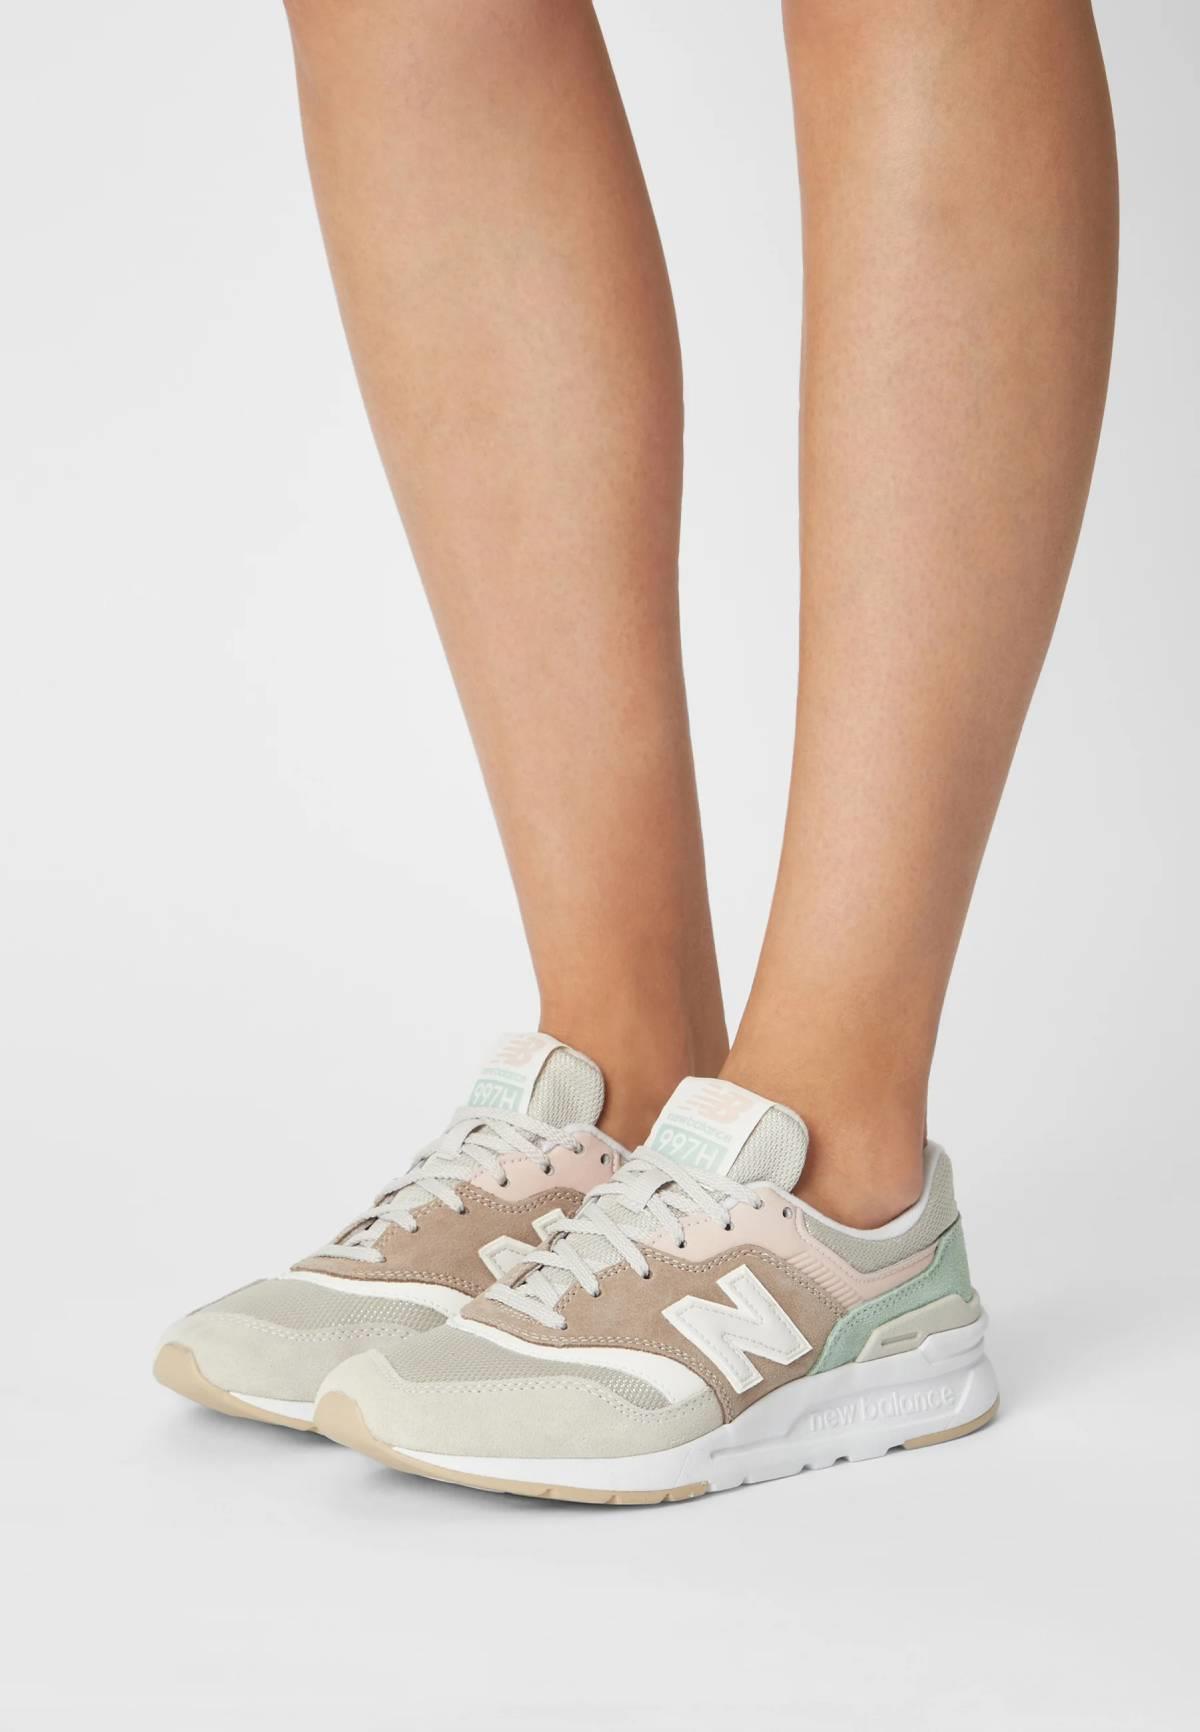 Zapatillas deportivas suela blanca, New Balance 